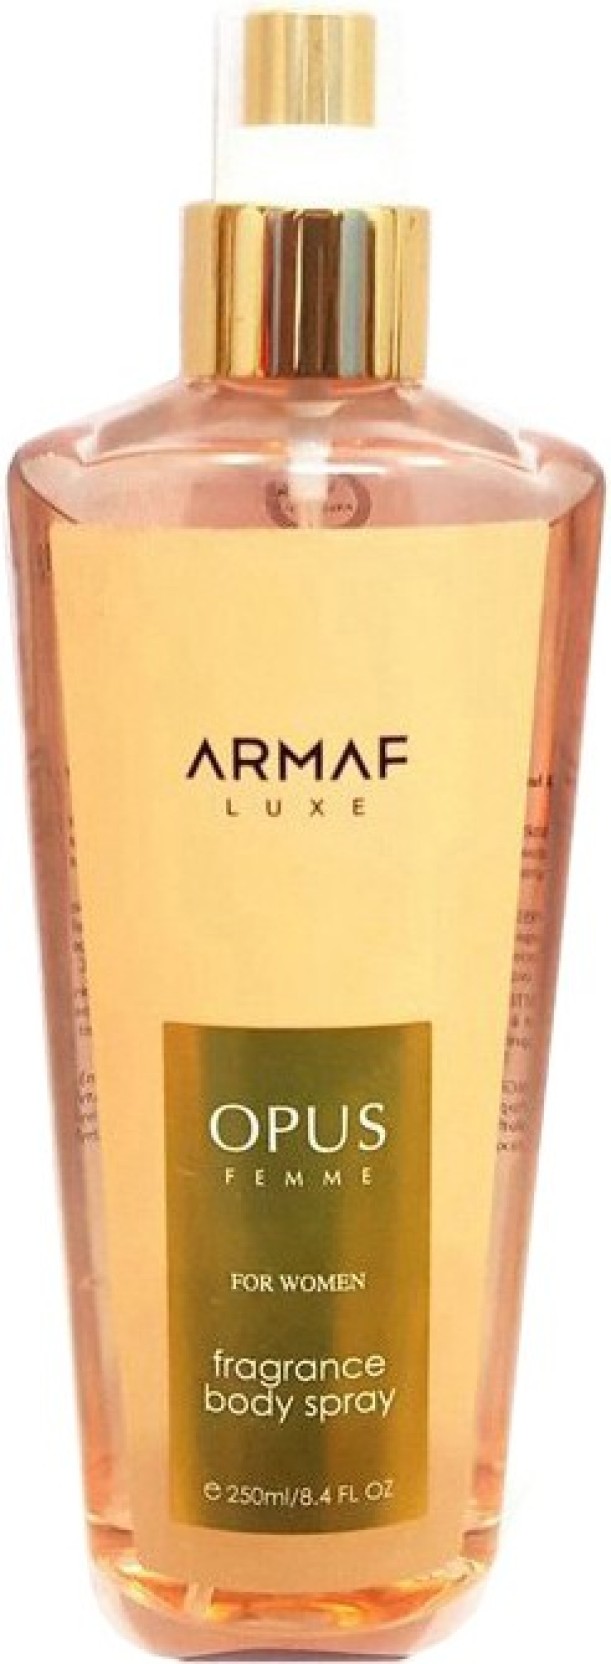 Armaf Opus Femme for Women